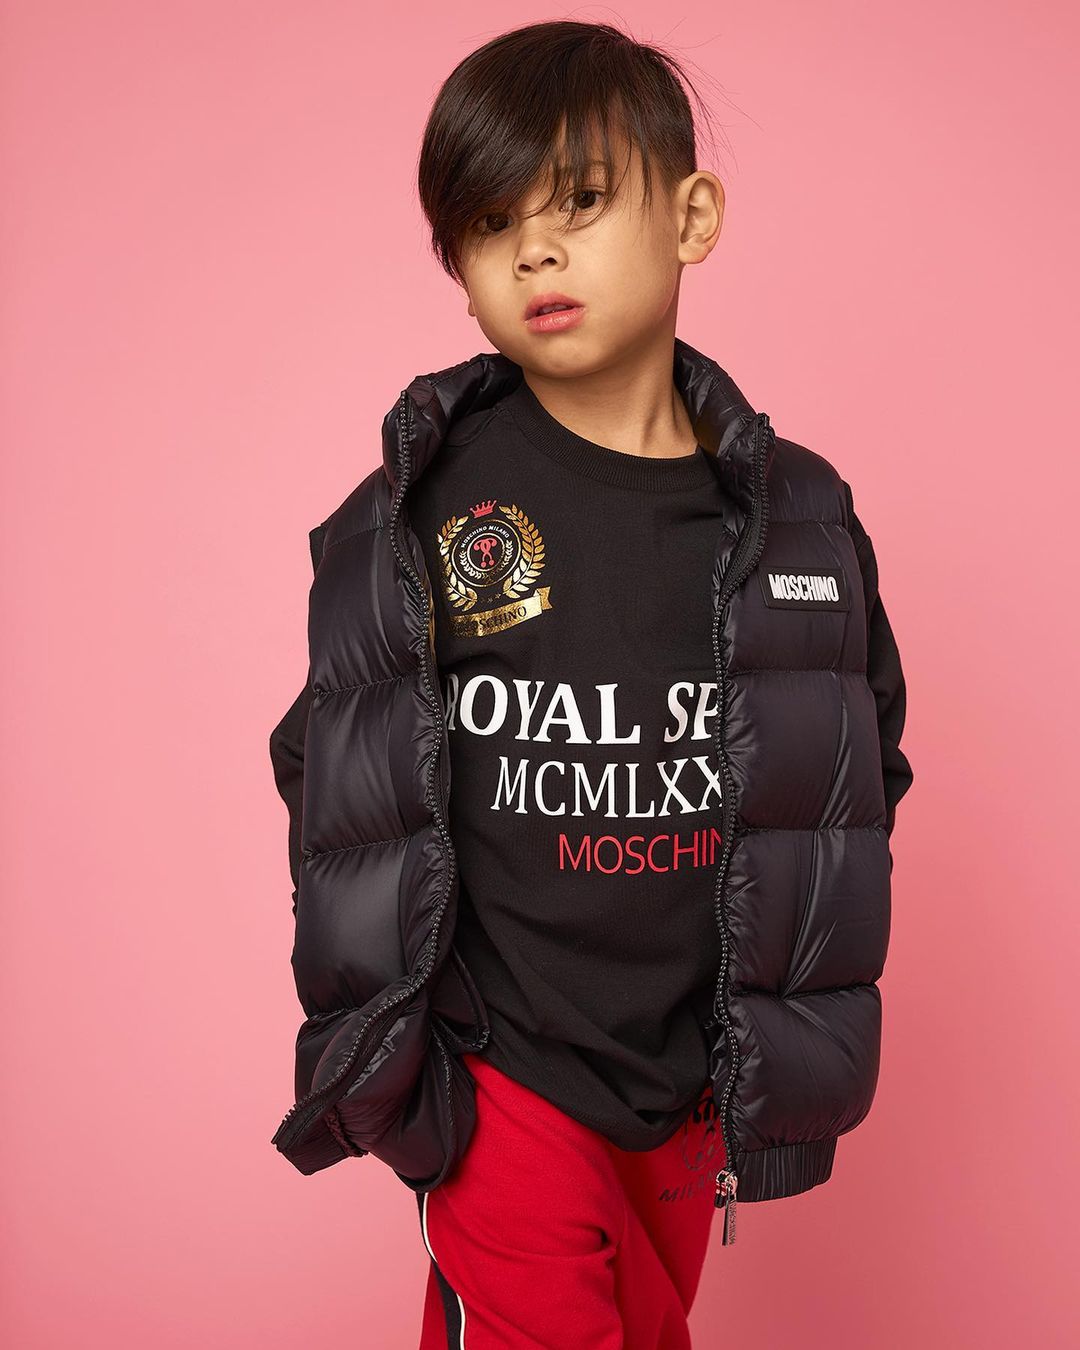 Moschino - Moschino Kids Model: Cruz @brookelpace #moschino @itsjeremyscott photo @marcus_mam #moschinobabykidteen